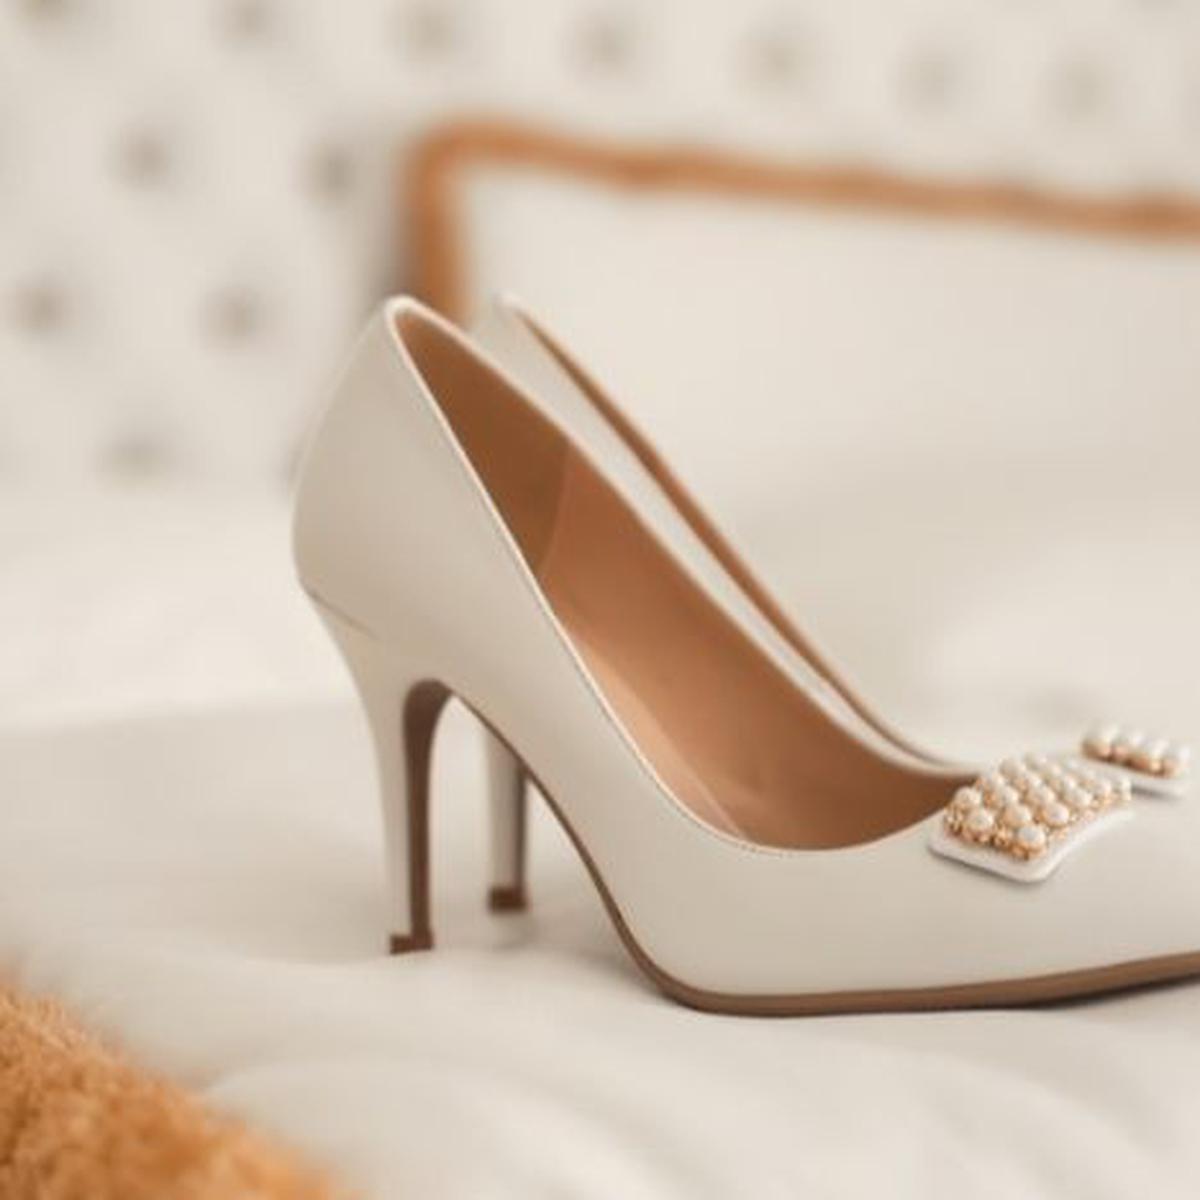 Zapatos novia, consejos para elegir los ideales para tu boda